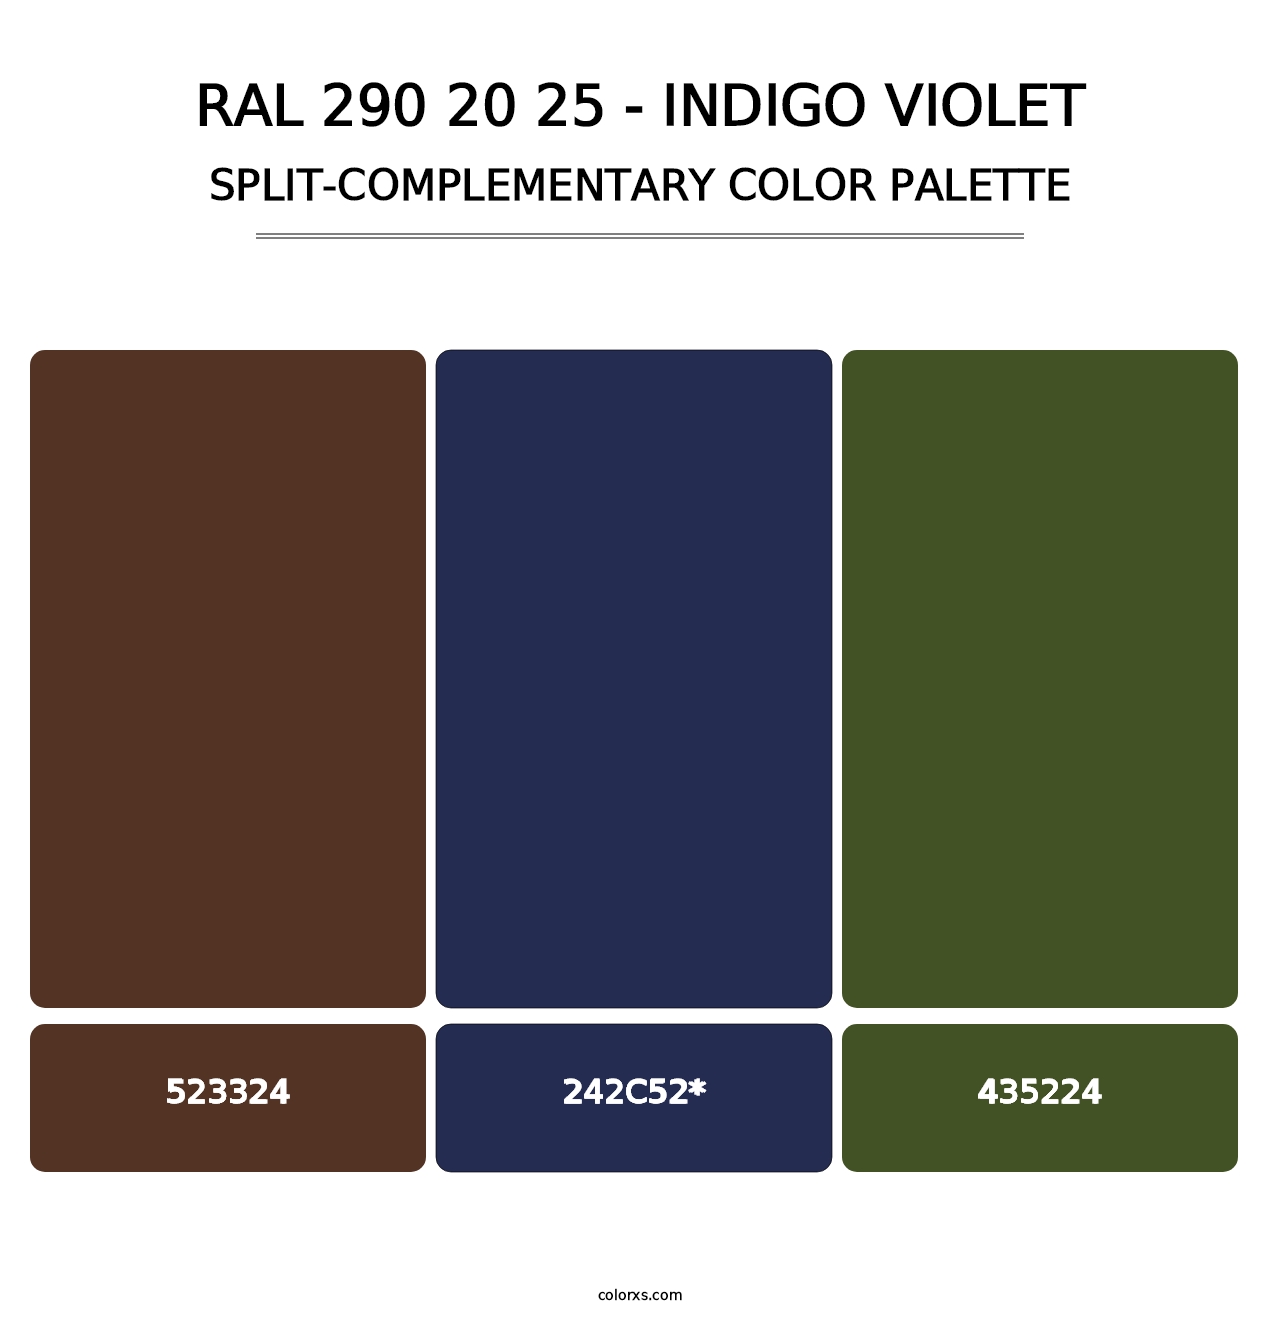 RAL 290 20 25 - Indigo Violet - Split-Complementary Color Palette